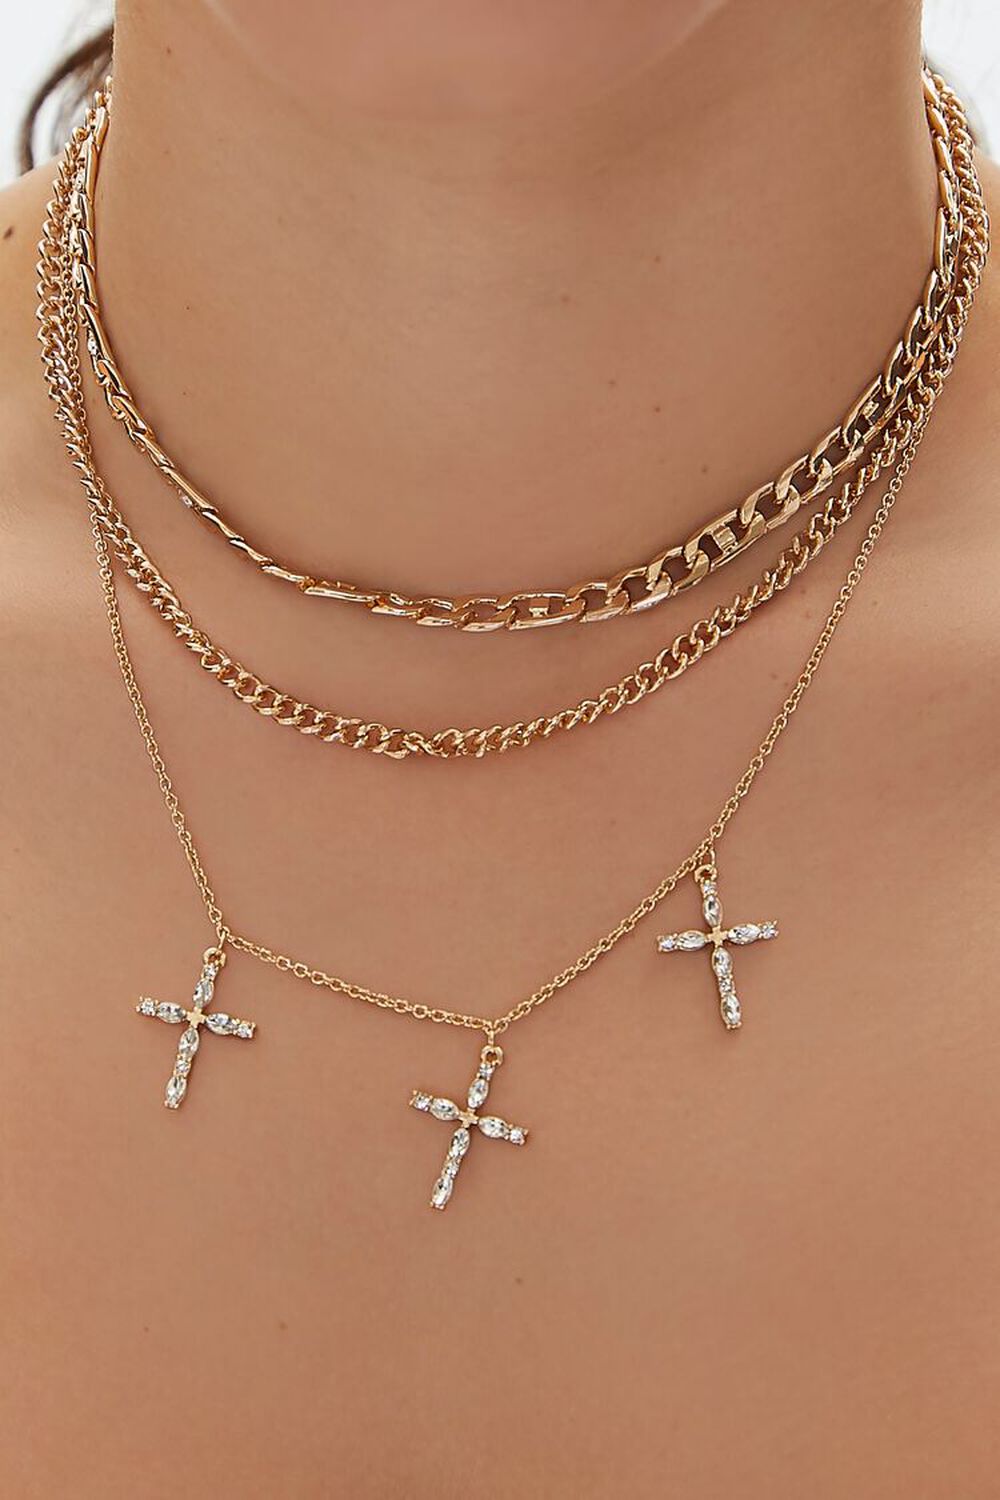 GOLD Faux Gem Cross Chain Necklace Set, image 1